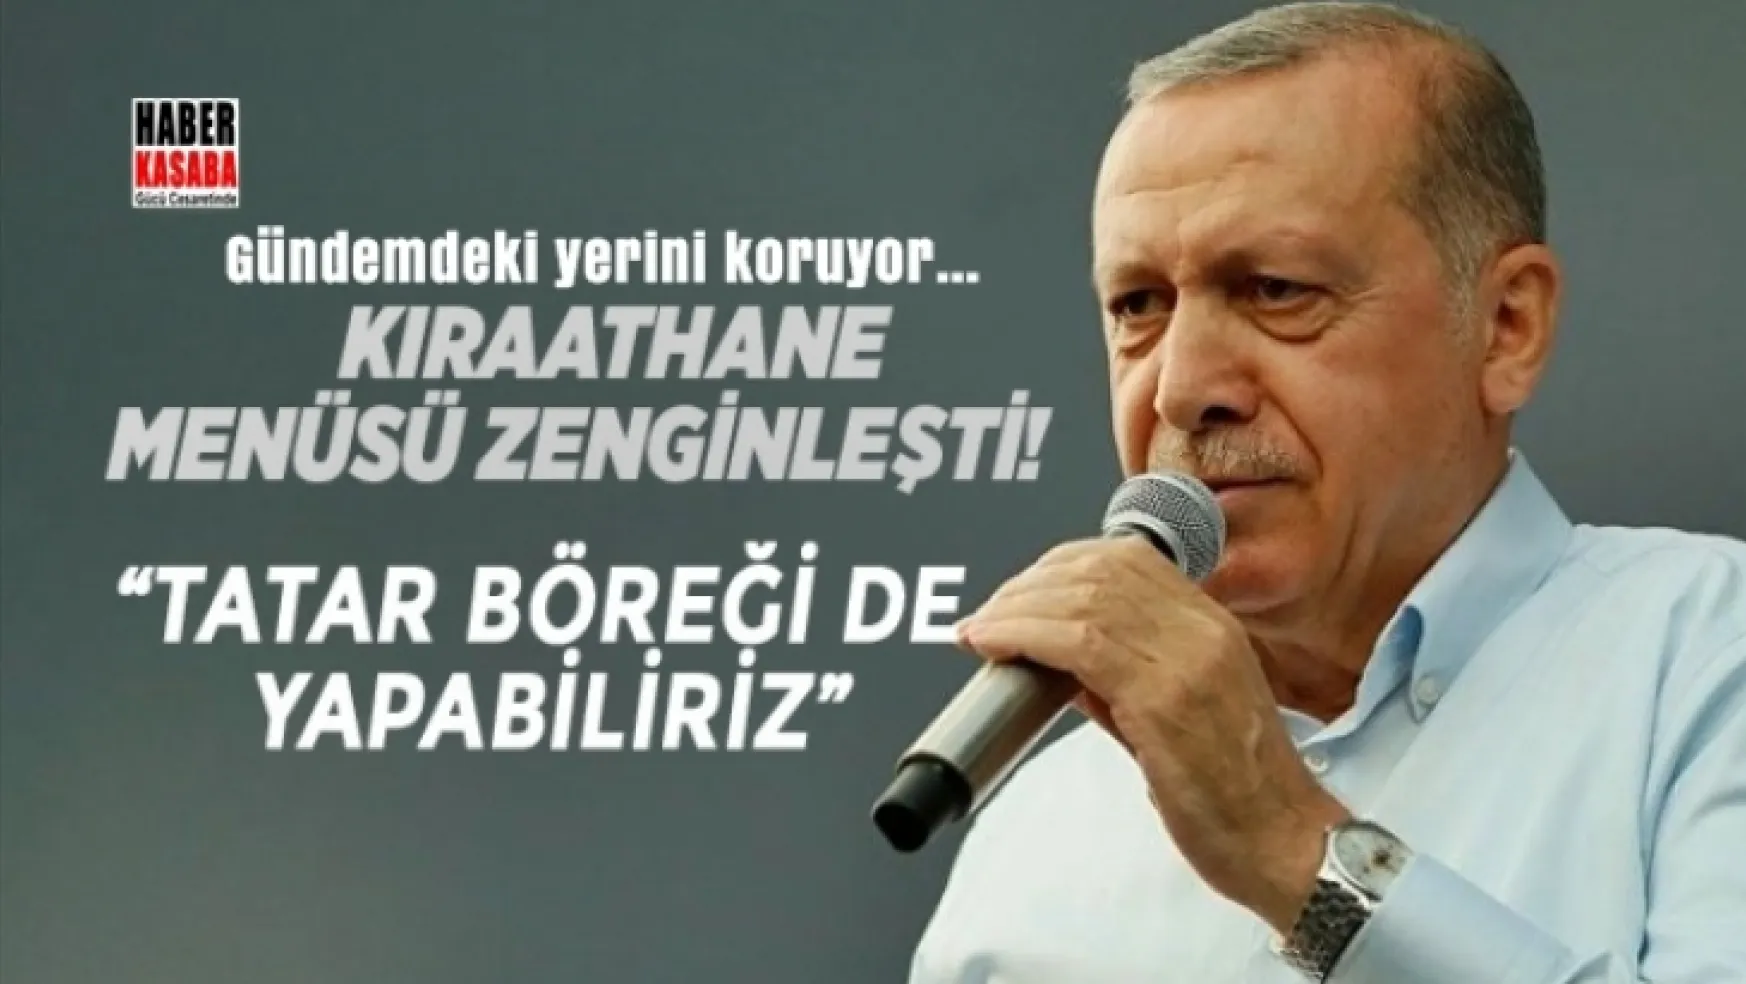 Erdoğan'dan Müjde geldi: Kıraathane menüsü zenginleşti!